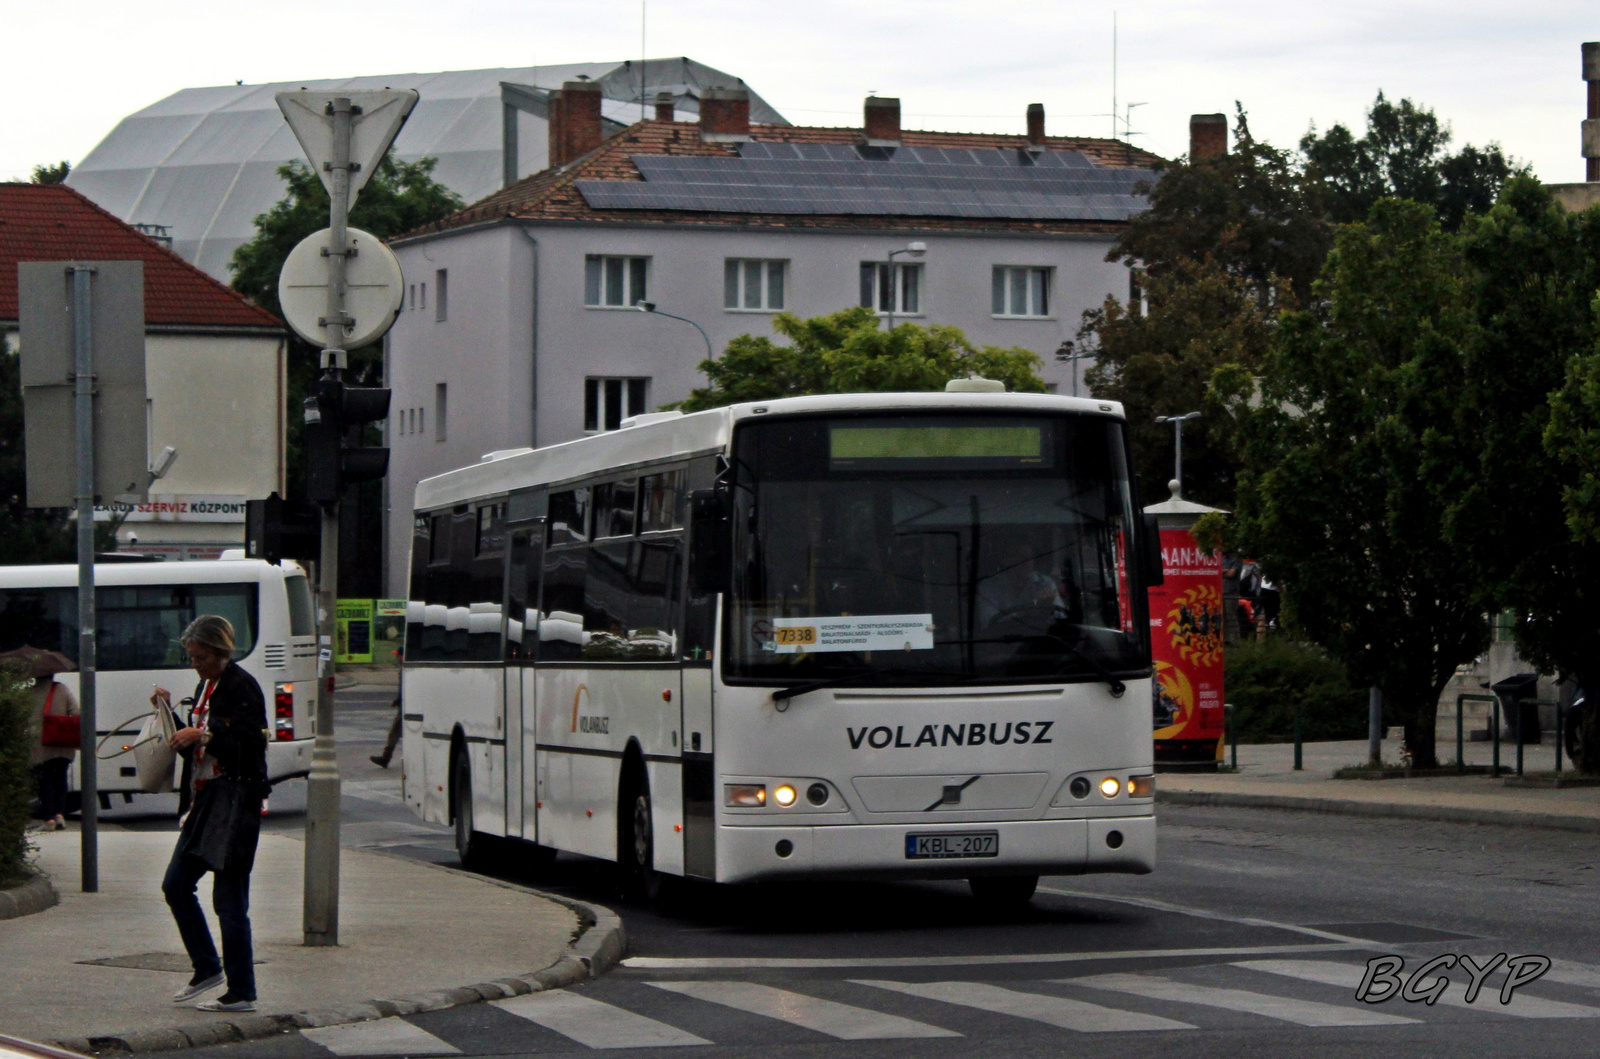 Alfabusz Regio (KBL-207)